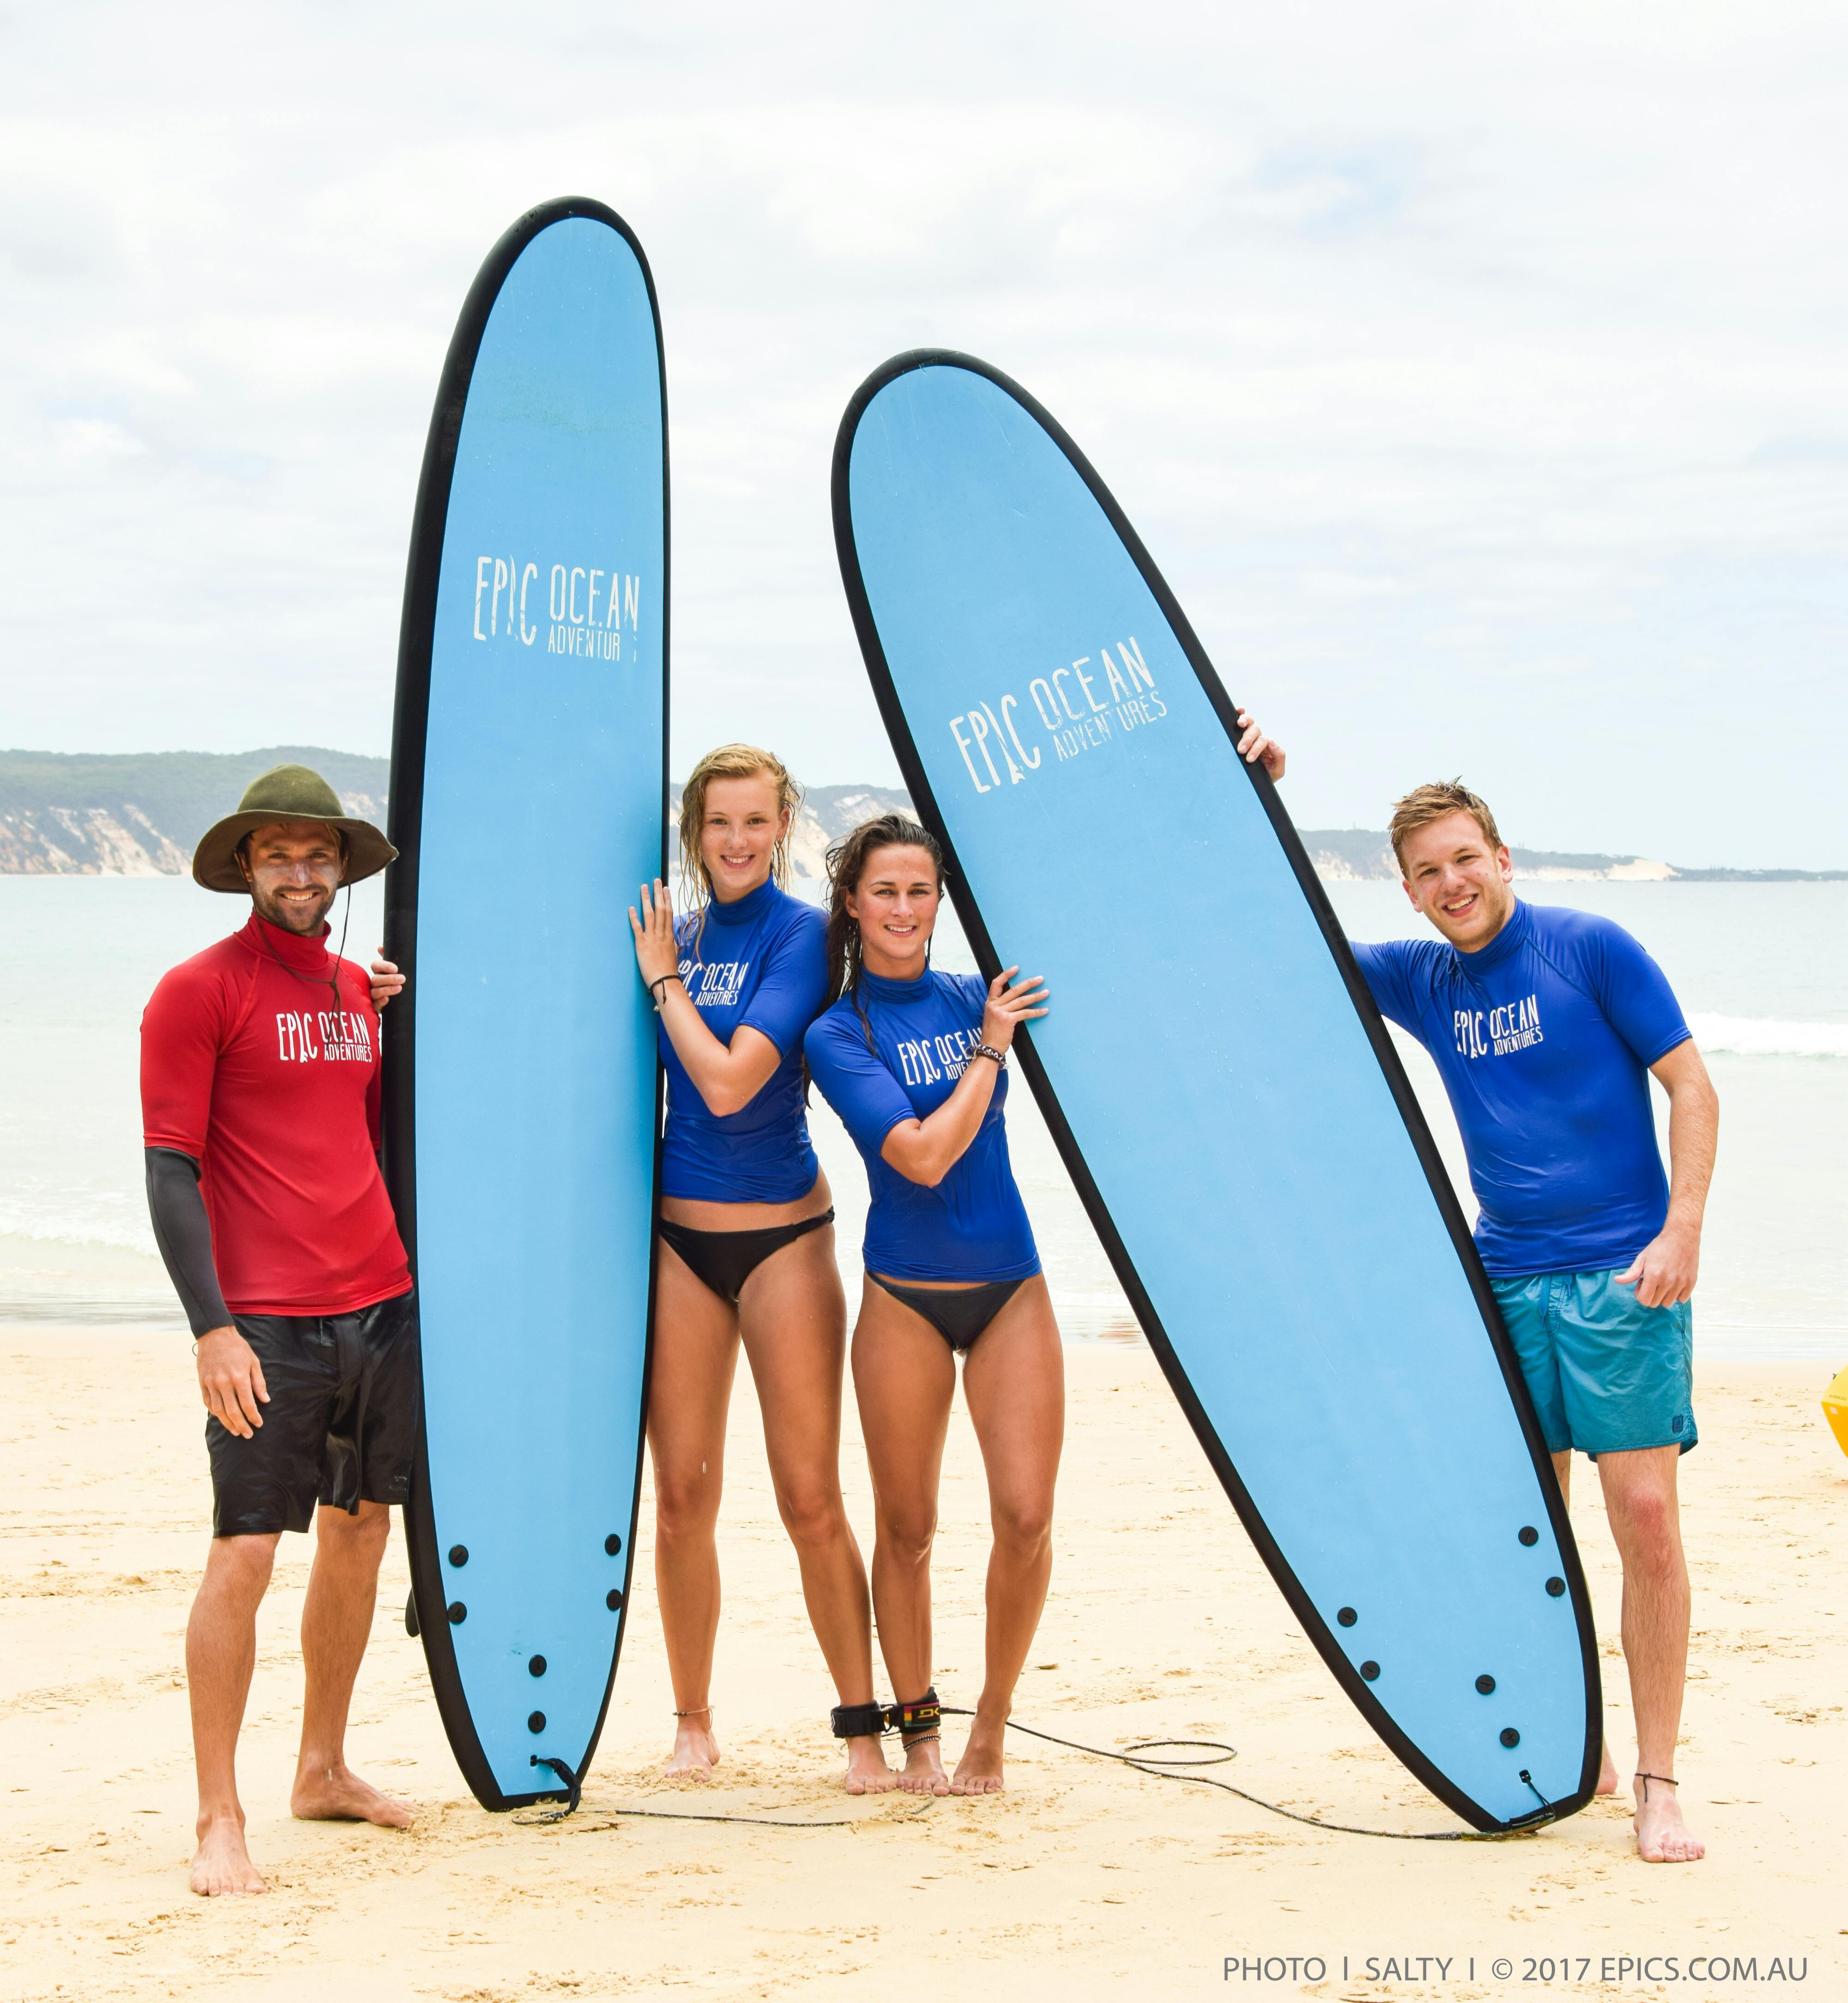 Aulas de surf em Noosa e excelente passeio de aventura na praia